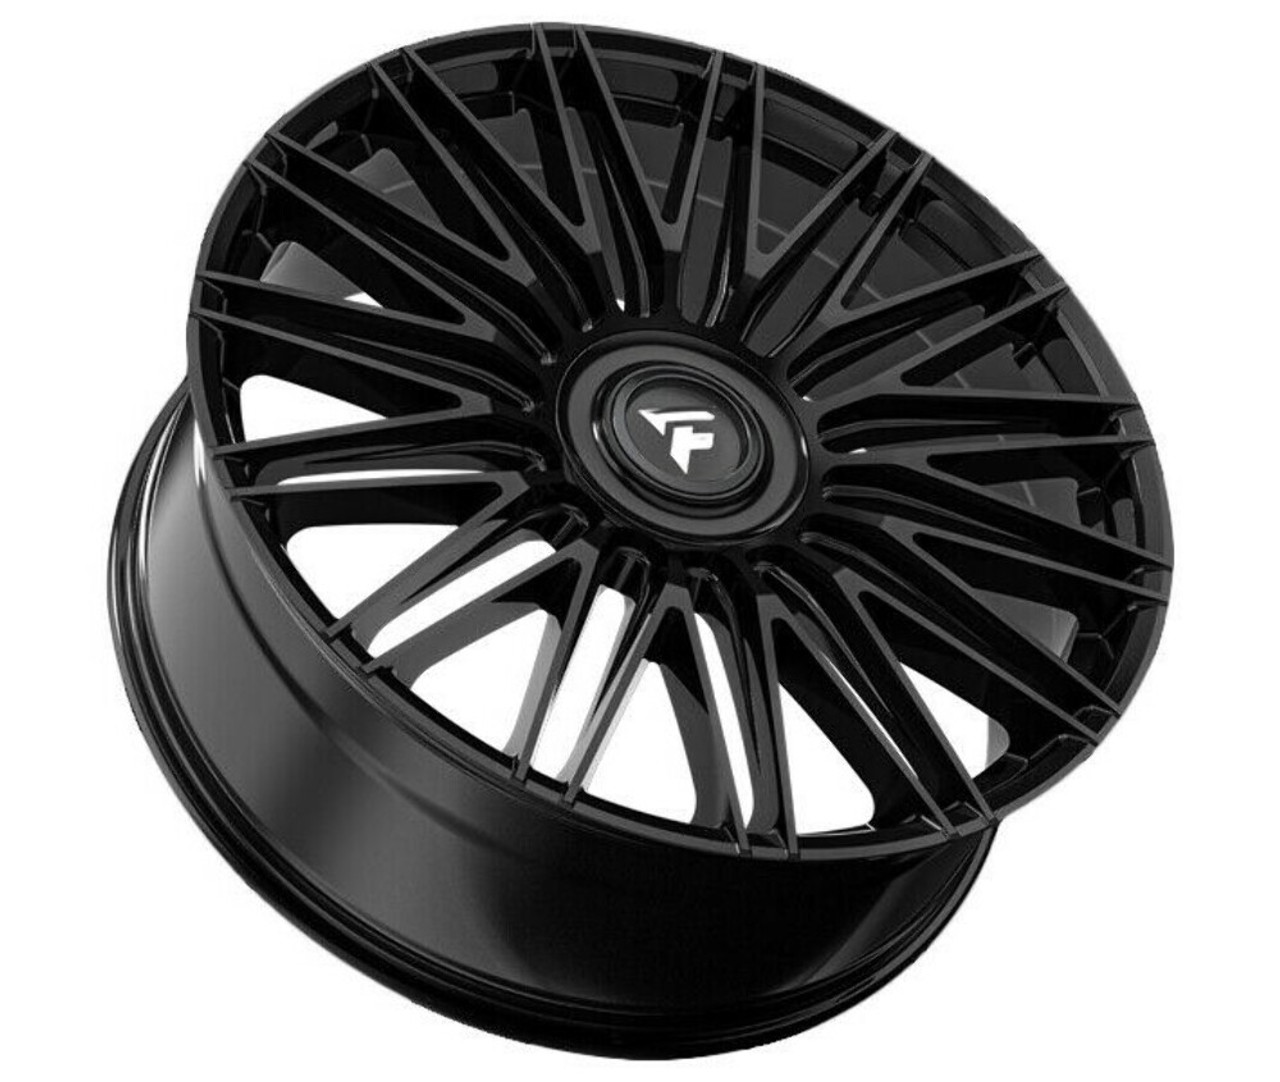 Set 4 22" Fittipaldi Street FS369B Gloss Black 22x9.5 Wheels 6x135 6x5.5 25mm